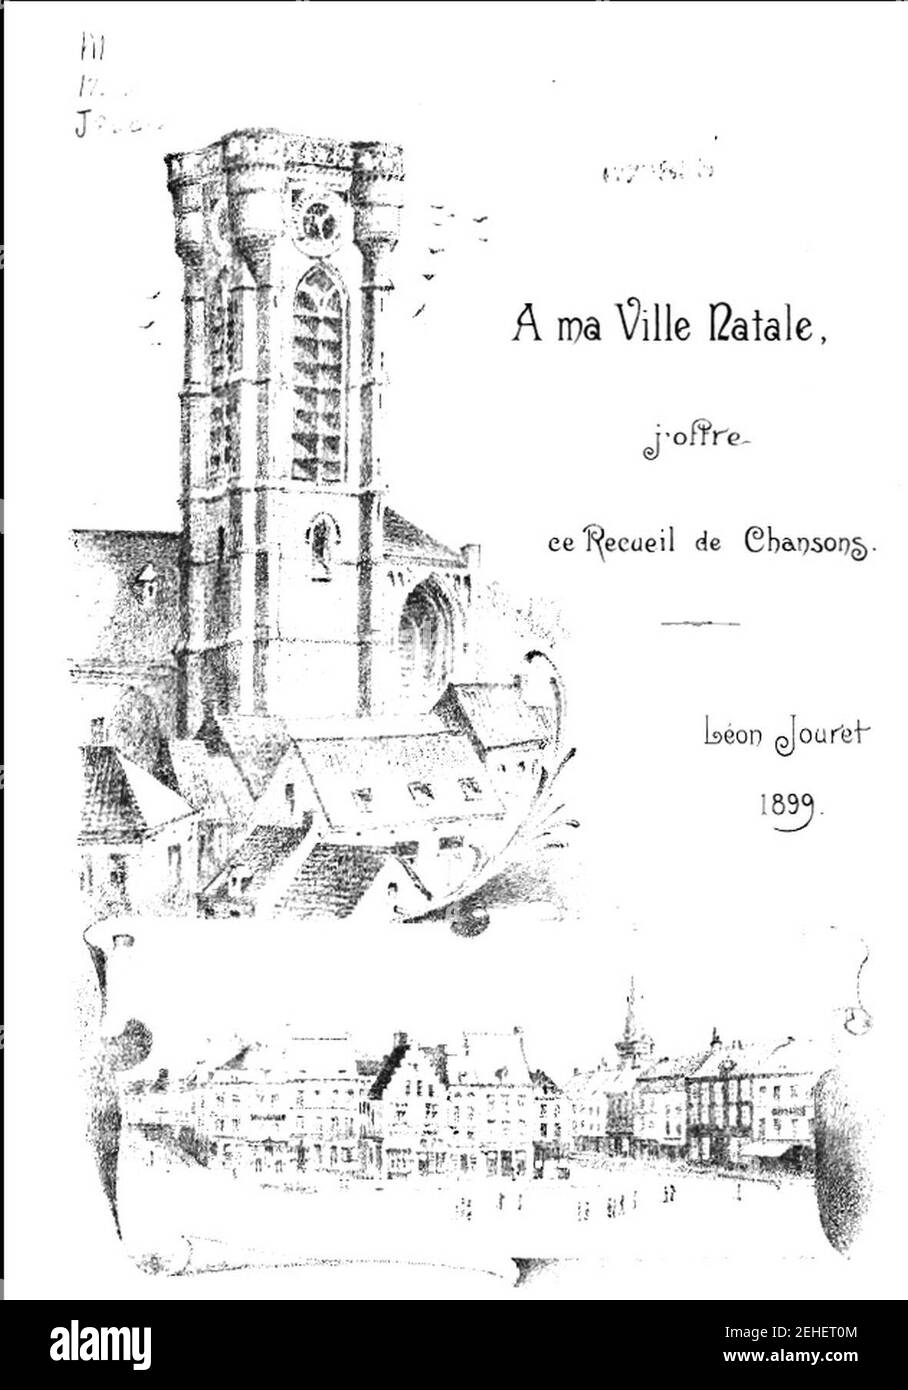 Página de garde d'un recueil de chansons de Léon Jouret. Foto de stock